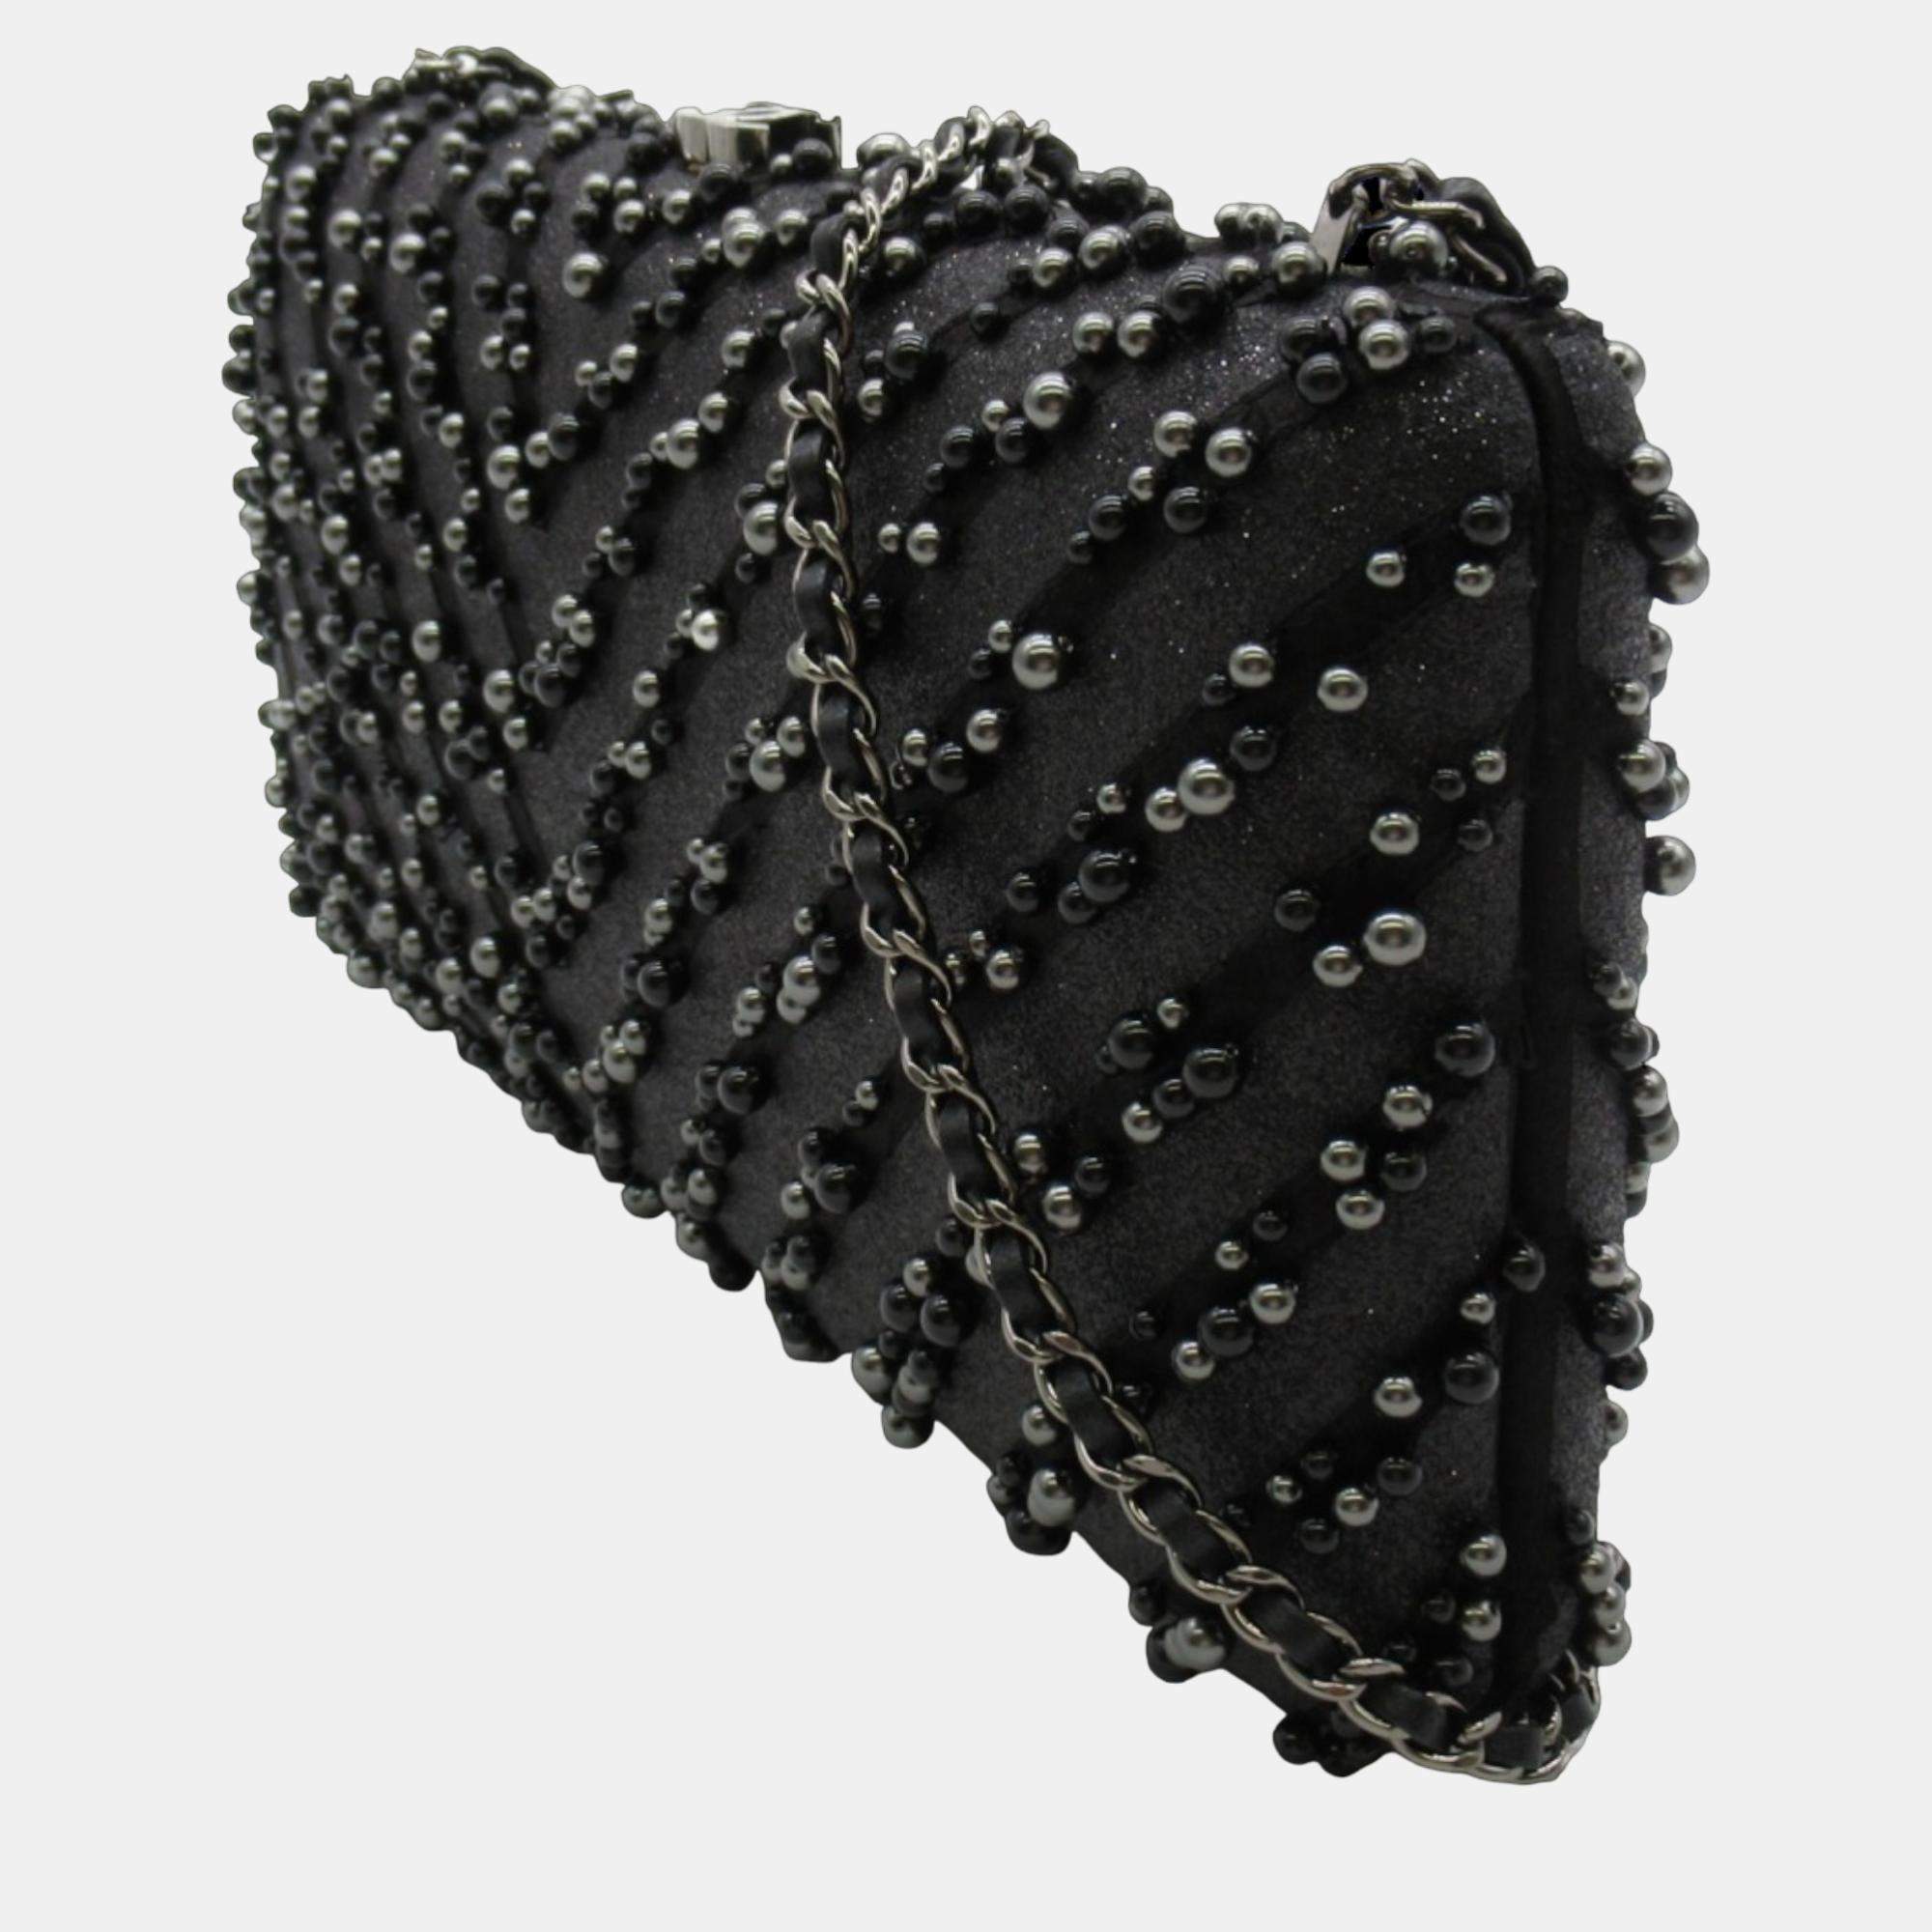 Caviar Beaded Clutch Handbag